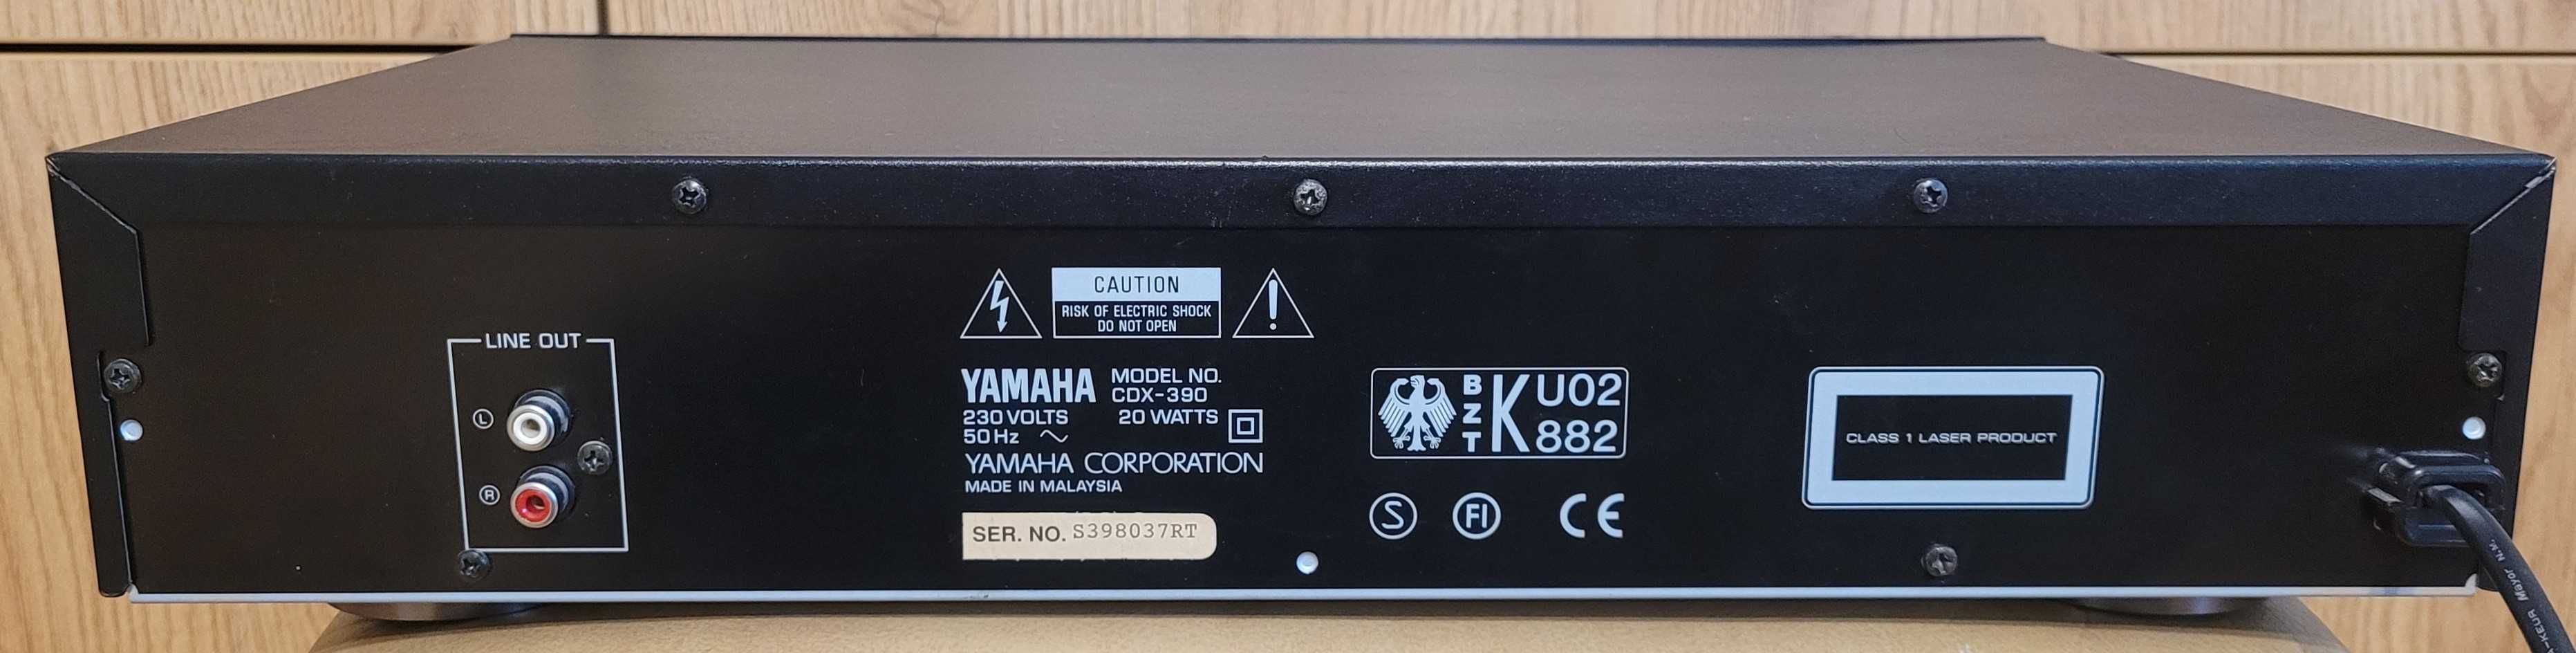 Yamaha CDX-390 odtwarzacz cd